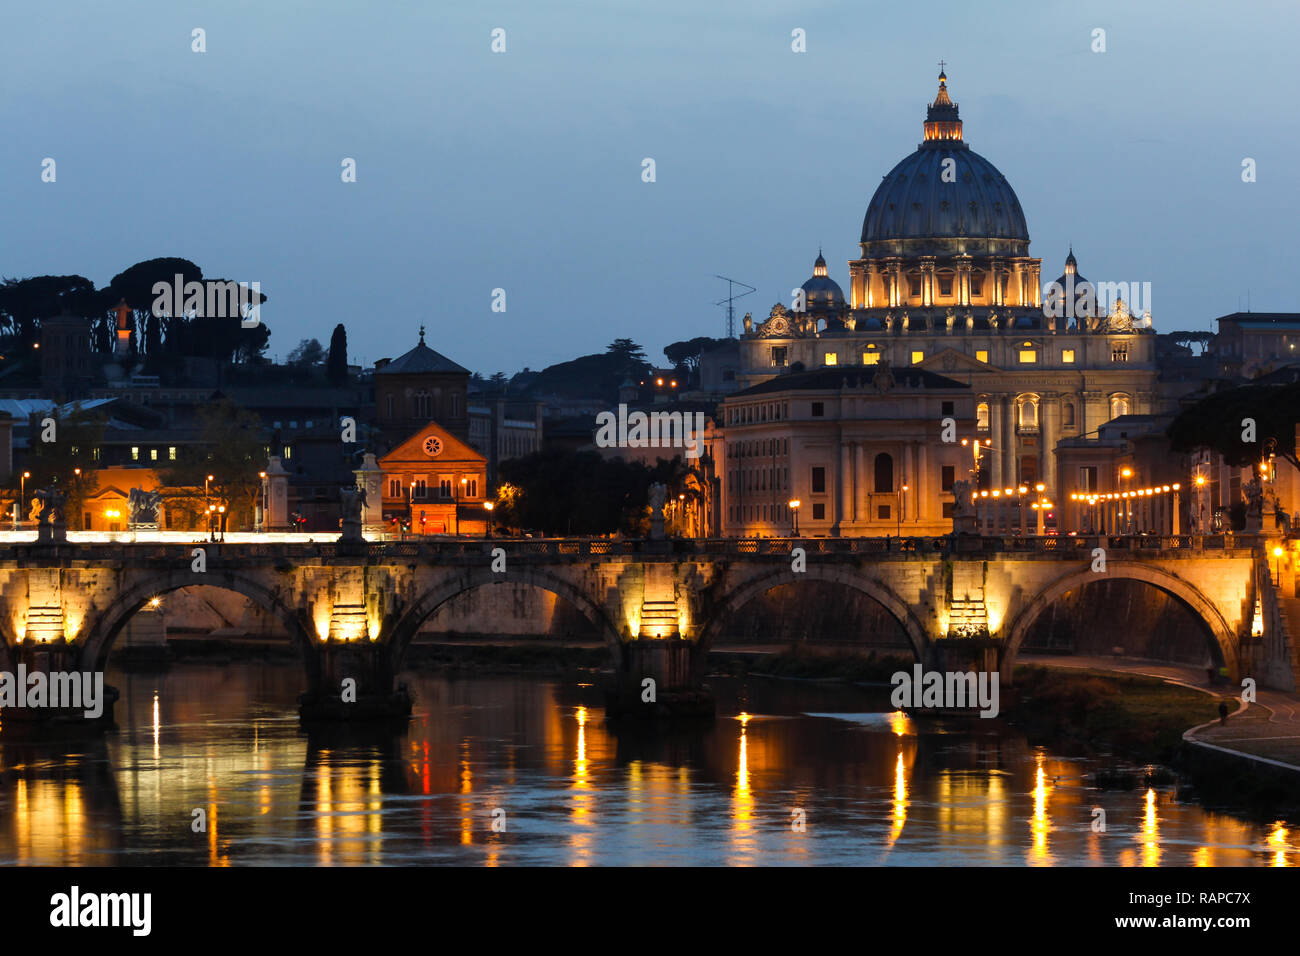 Die unabhängige Stadt - Staat Vatikanstadt in Rom, Italien. Die Vatikanstadt ist der kleinste Staat der Welt sowohl von Fläche und Bevölkerung. Stockfoto